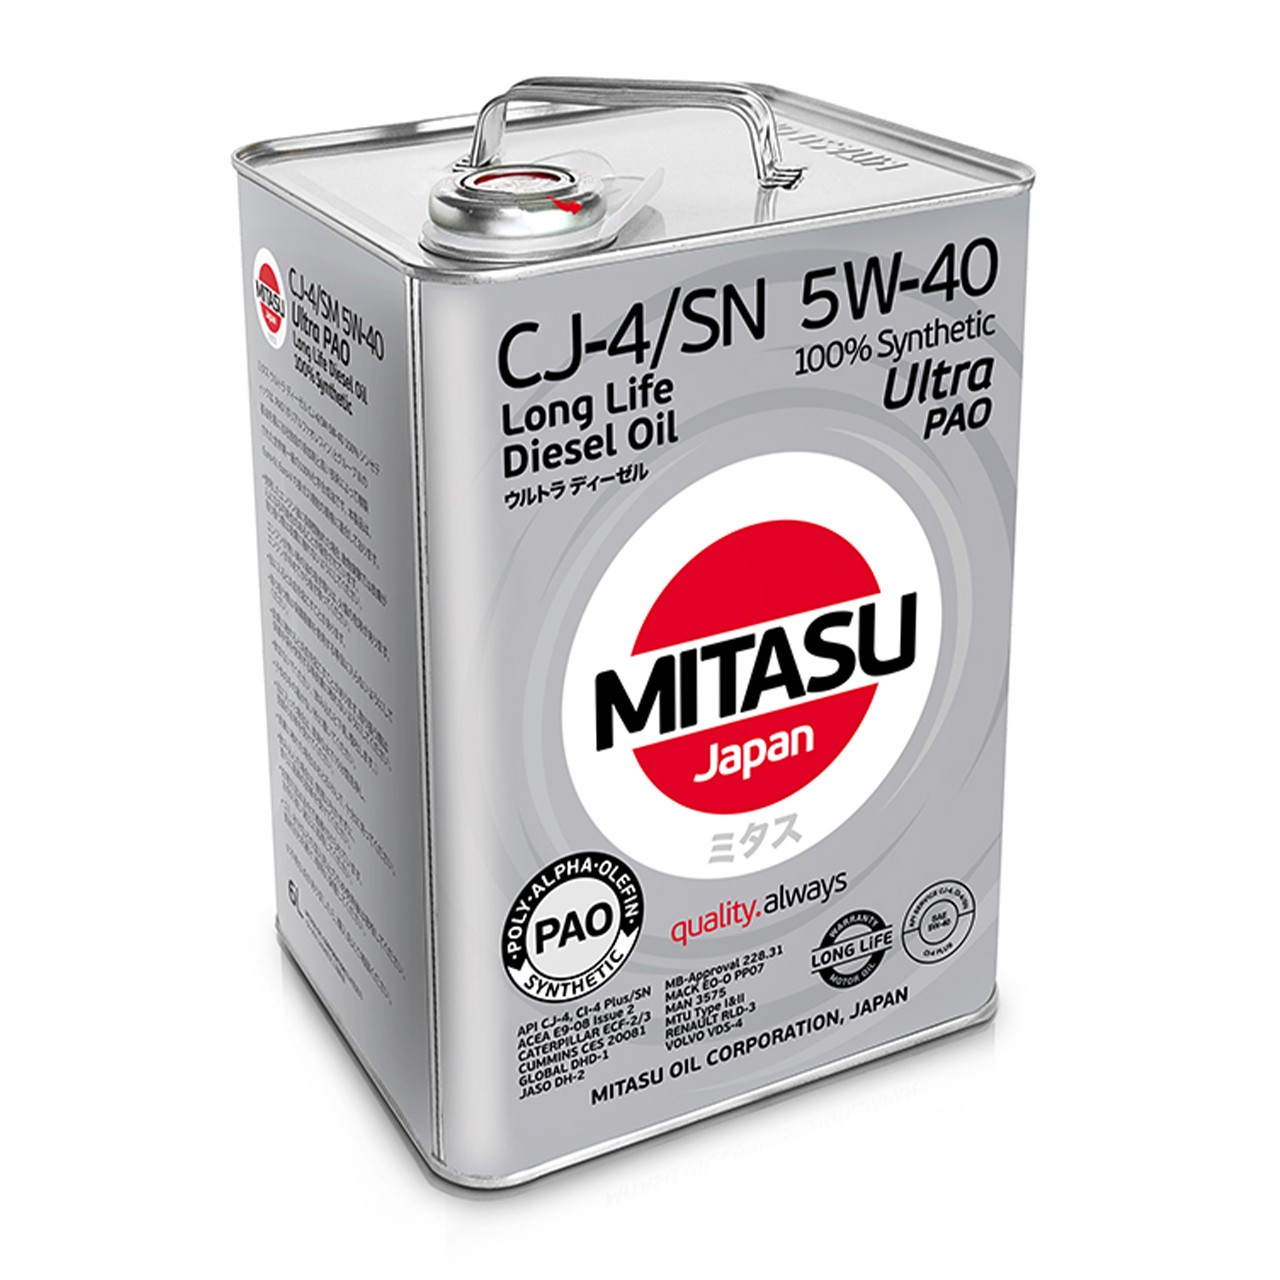 Купить запчасть MITASU - MJ2116 Масло моторное MITASU CJ-4/SM 5w40 6л синтетическое для дизельных двигателей MJ211 (1/4) Япония